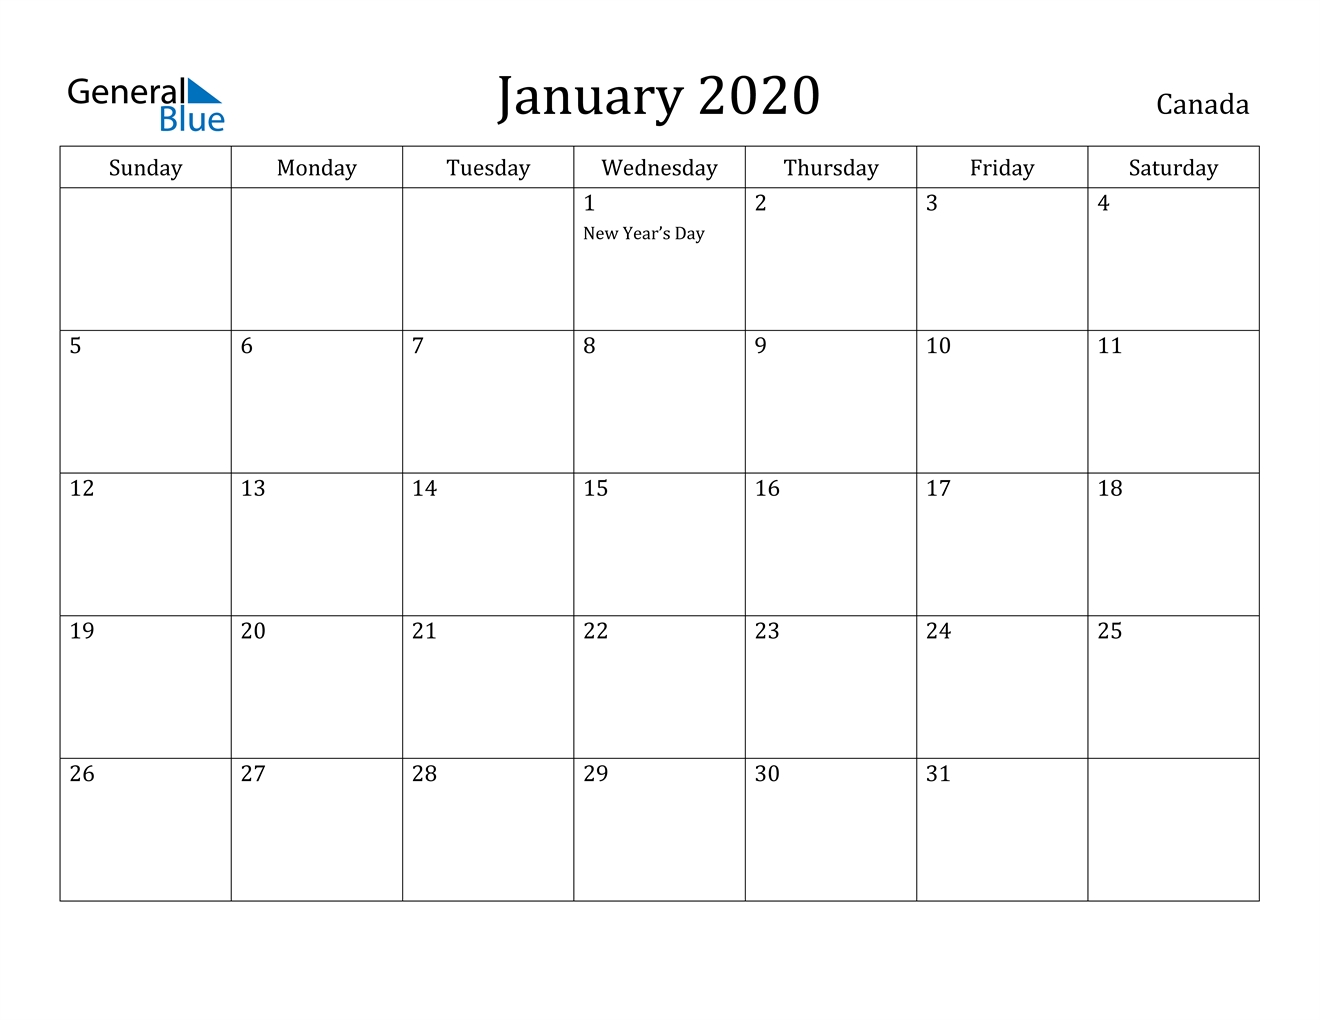 January 2020 Calendar - Canada Canada January 2020 Printable Calendar